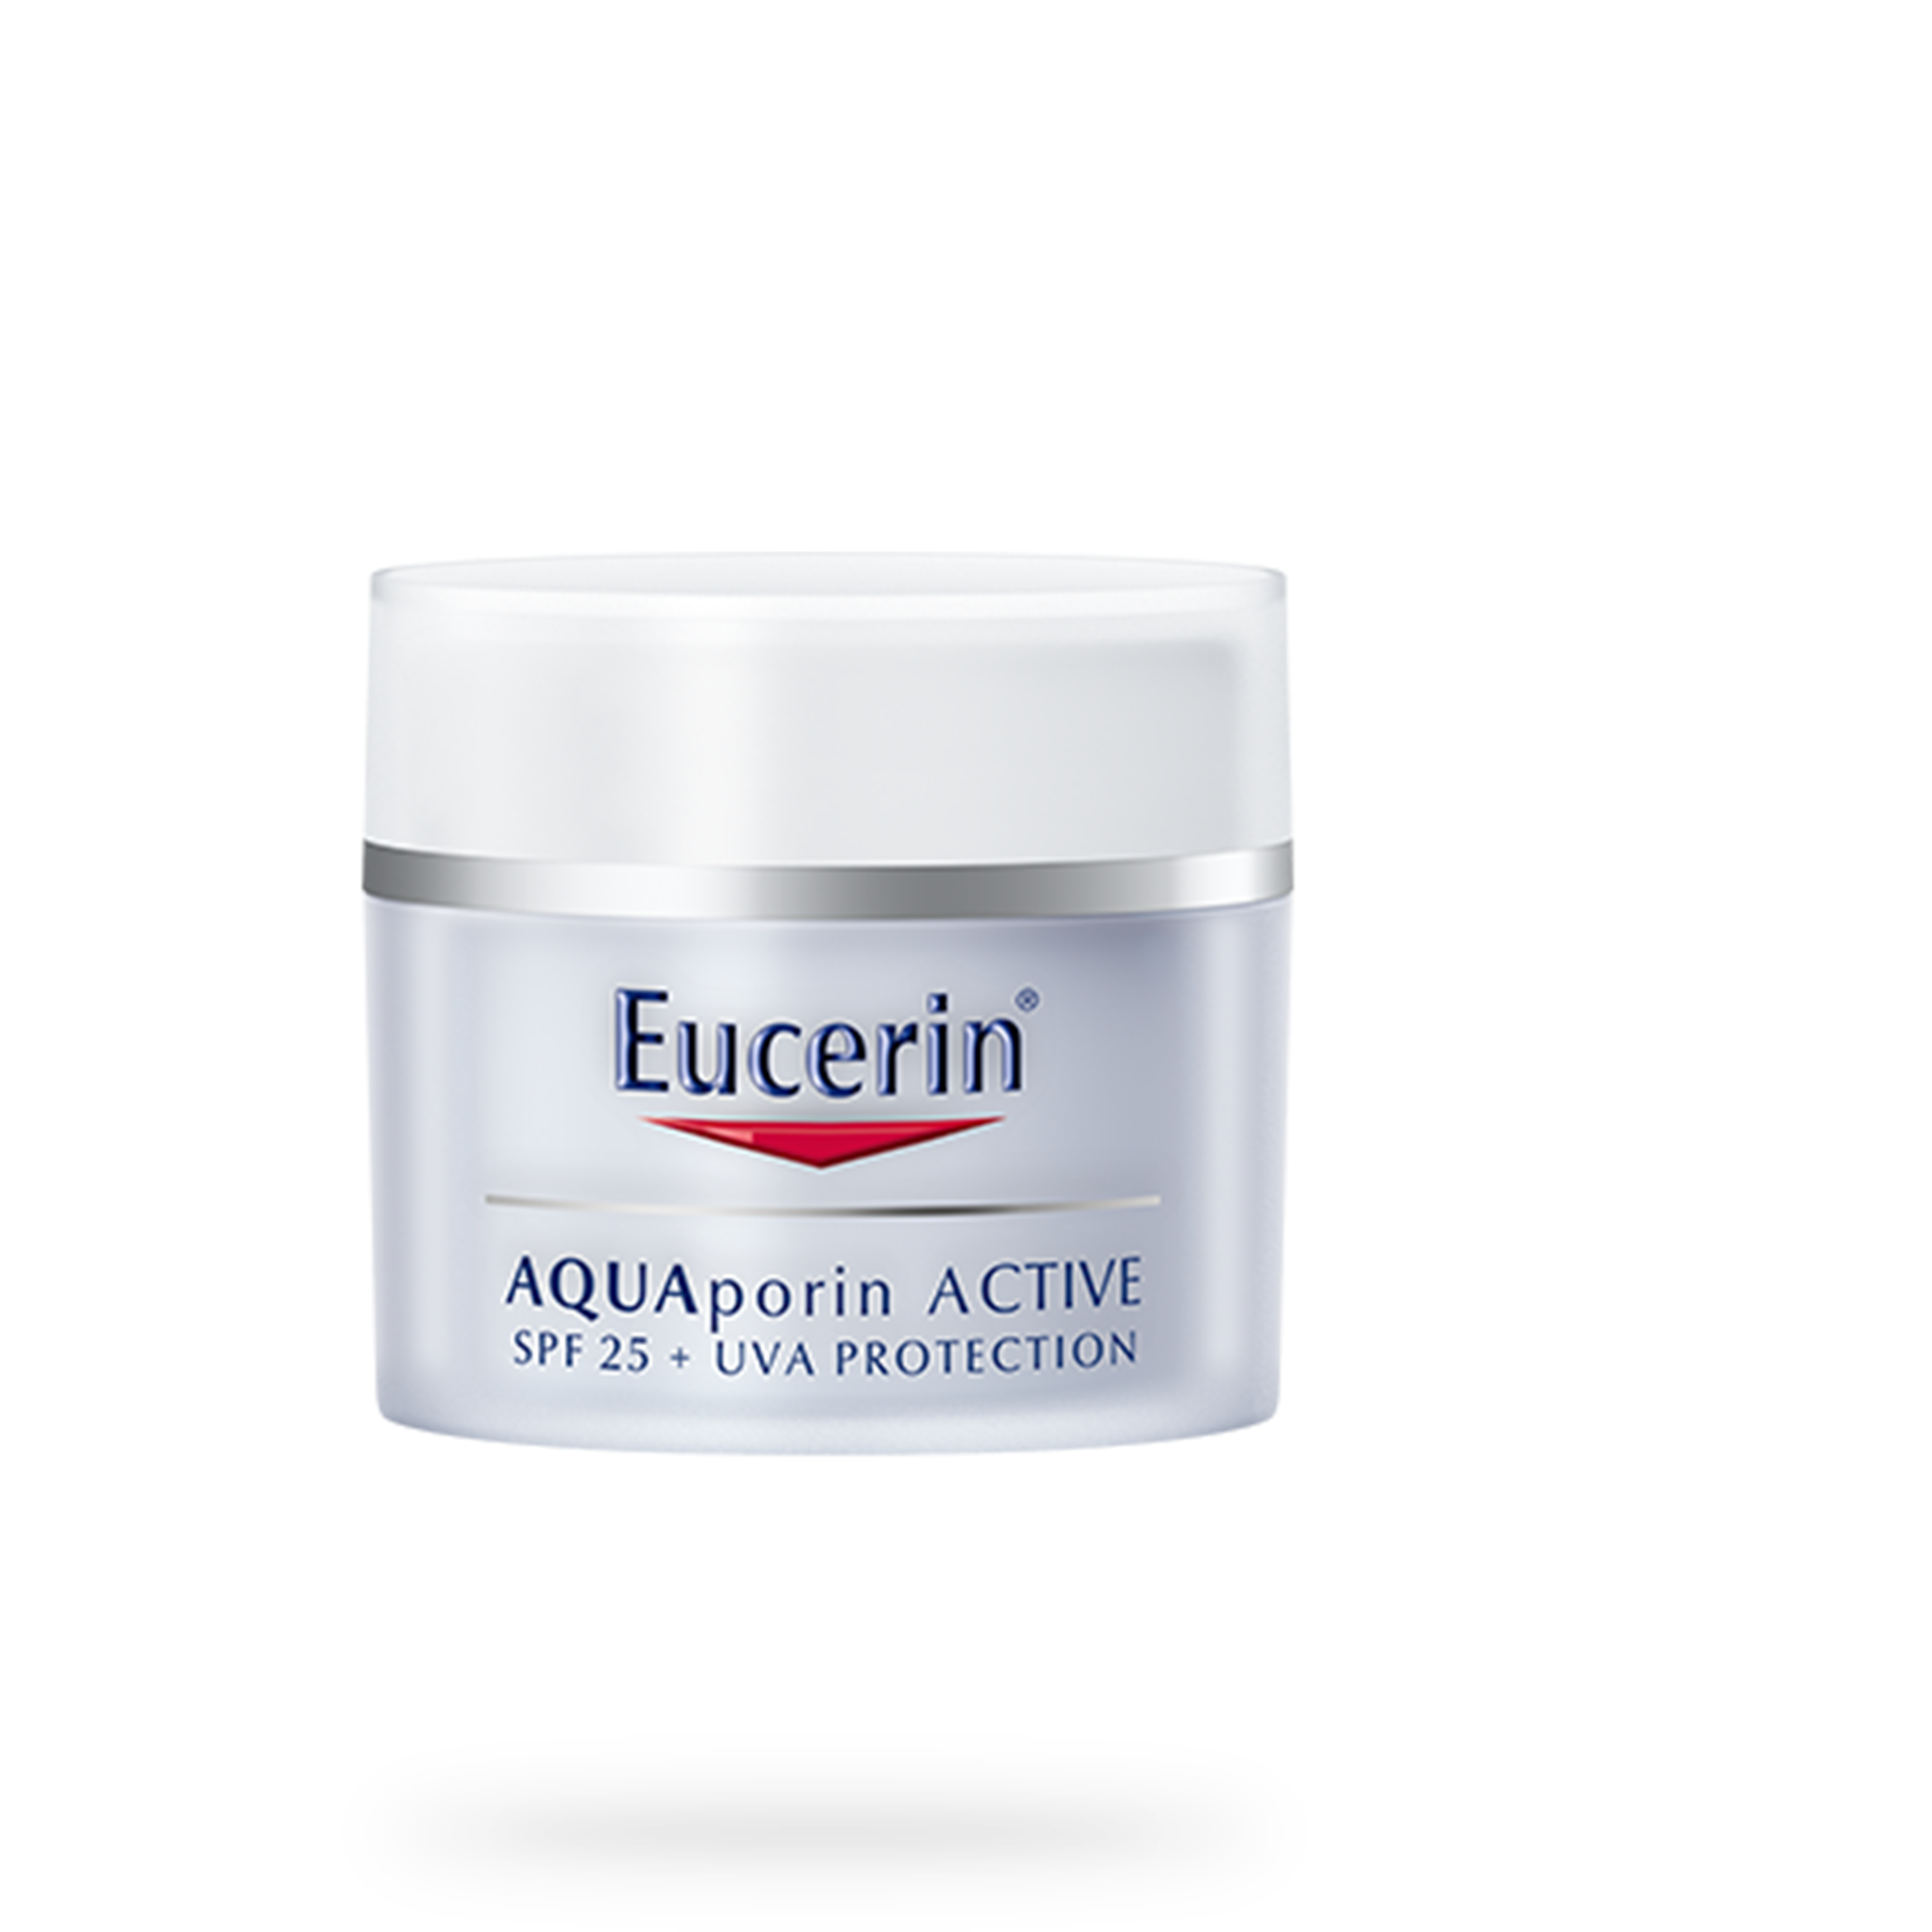 AQUAporin ACTIVE krema za lice s faktorom SPF 25 i UV zaštitom